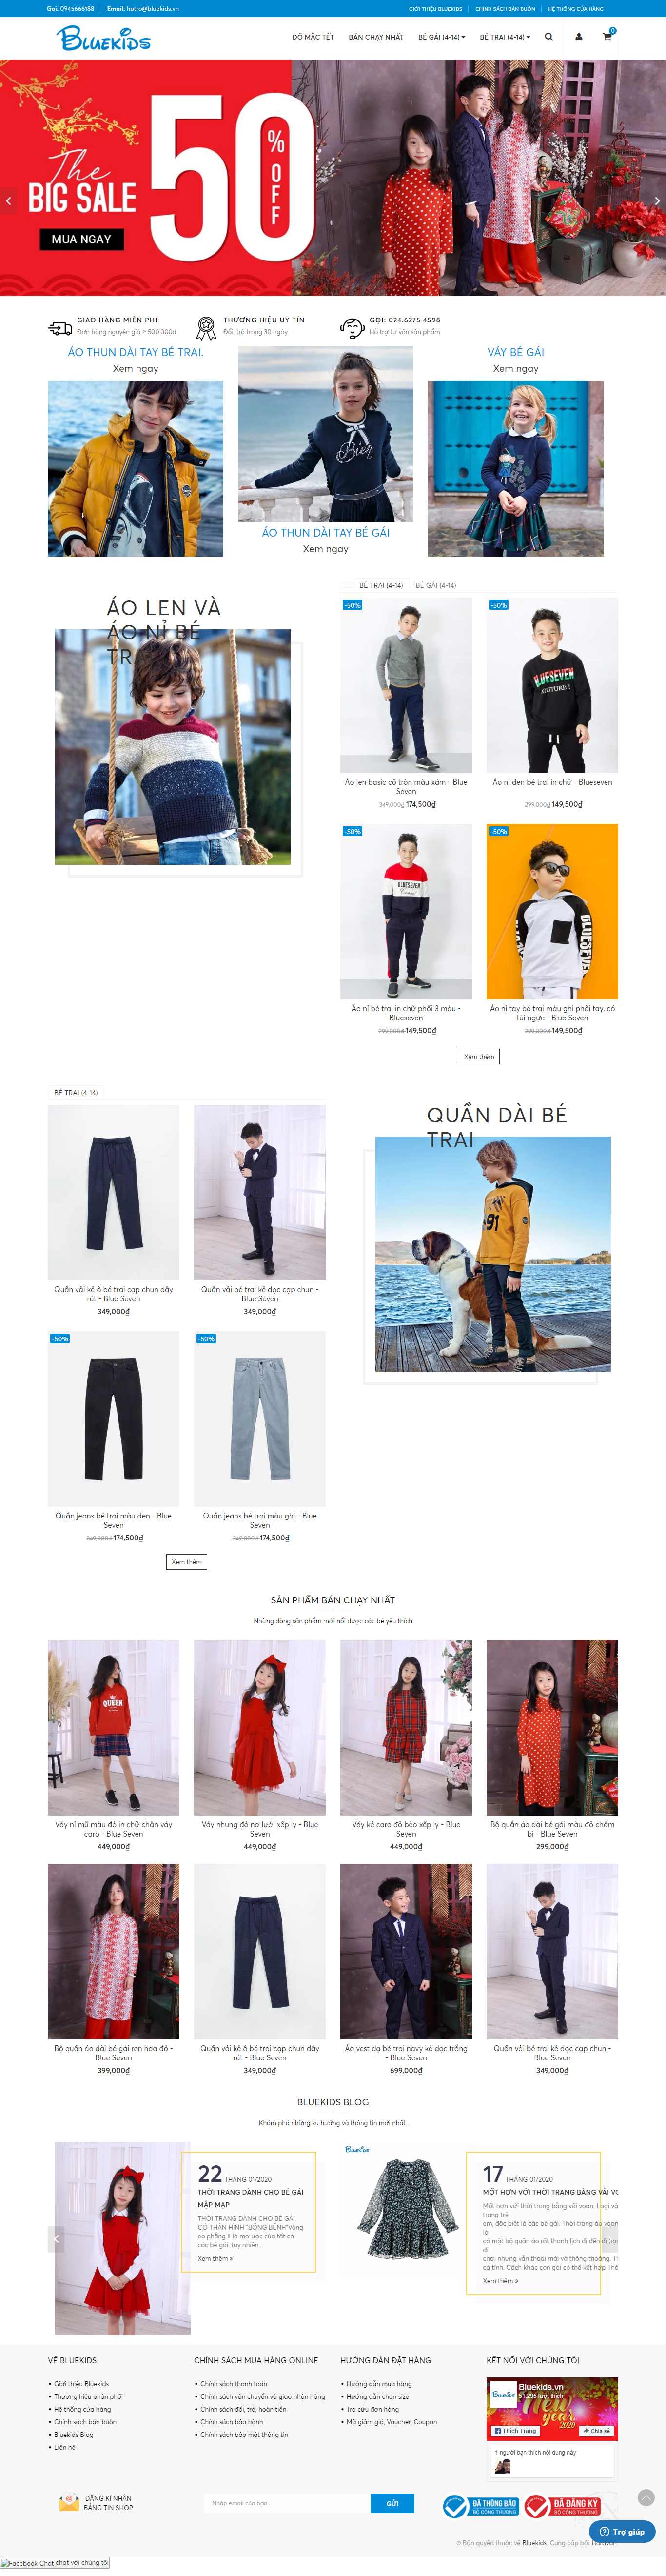 Thiết kế Website shop thời trang - bluekids.vn